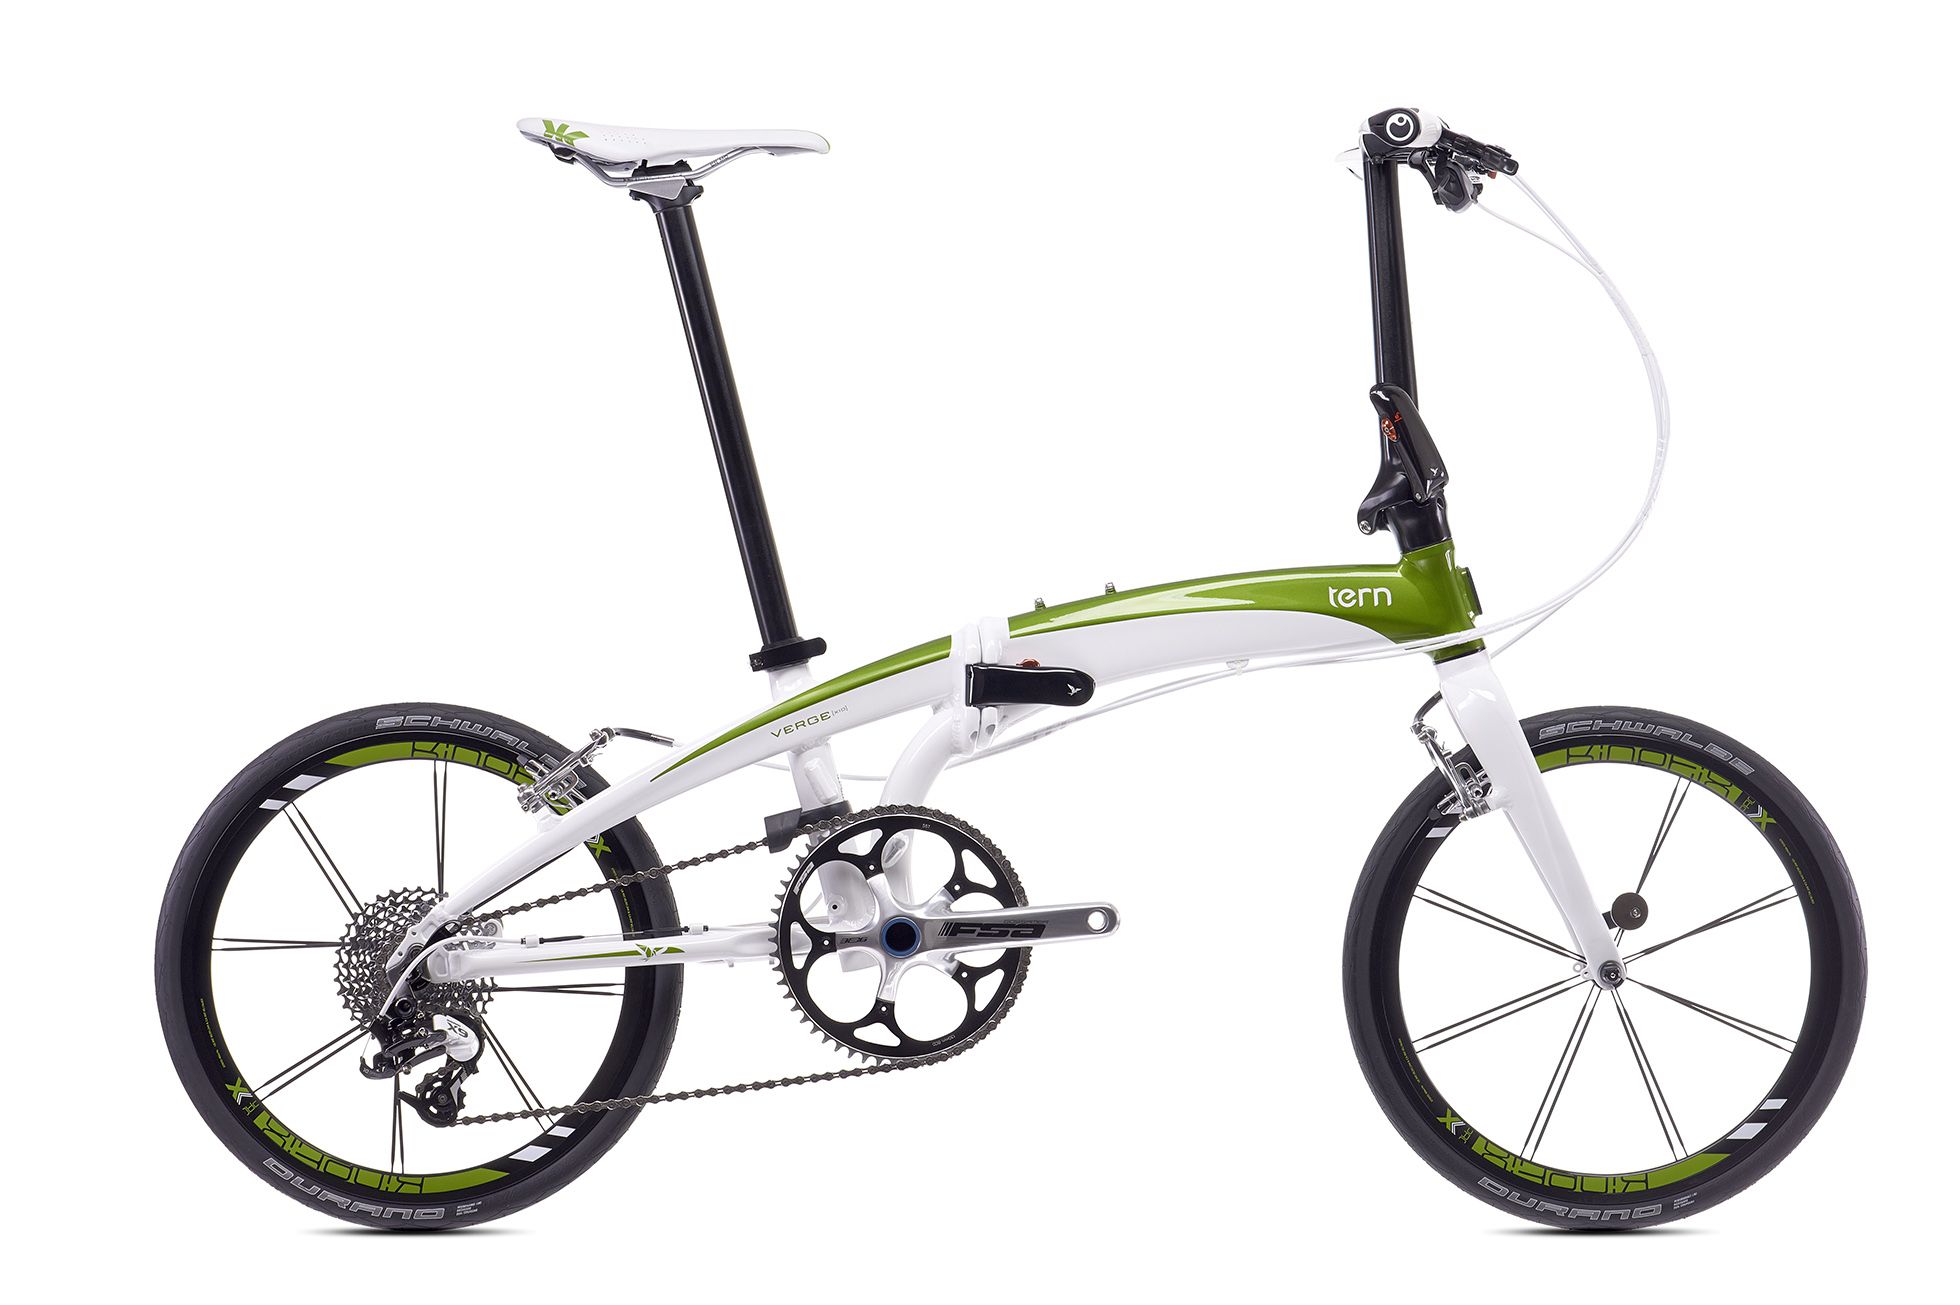  Отзывы о Складном велосипеде Tern Verge X10 2016